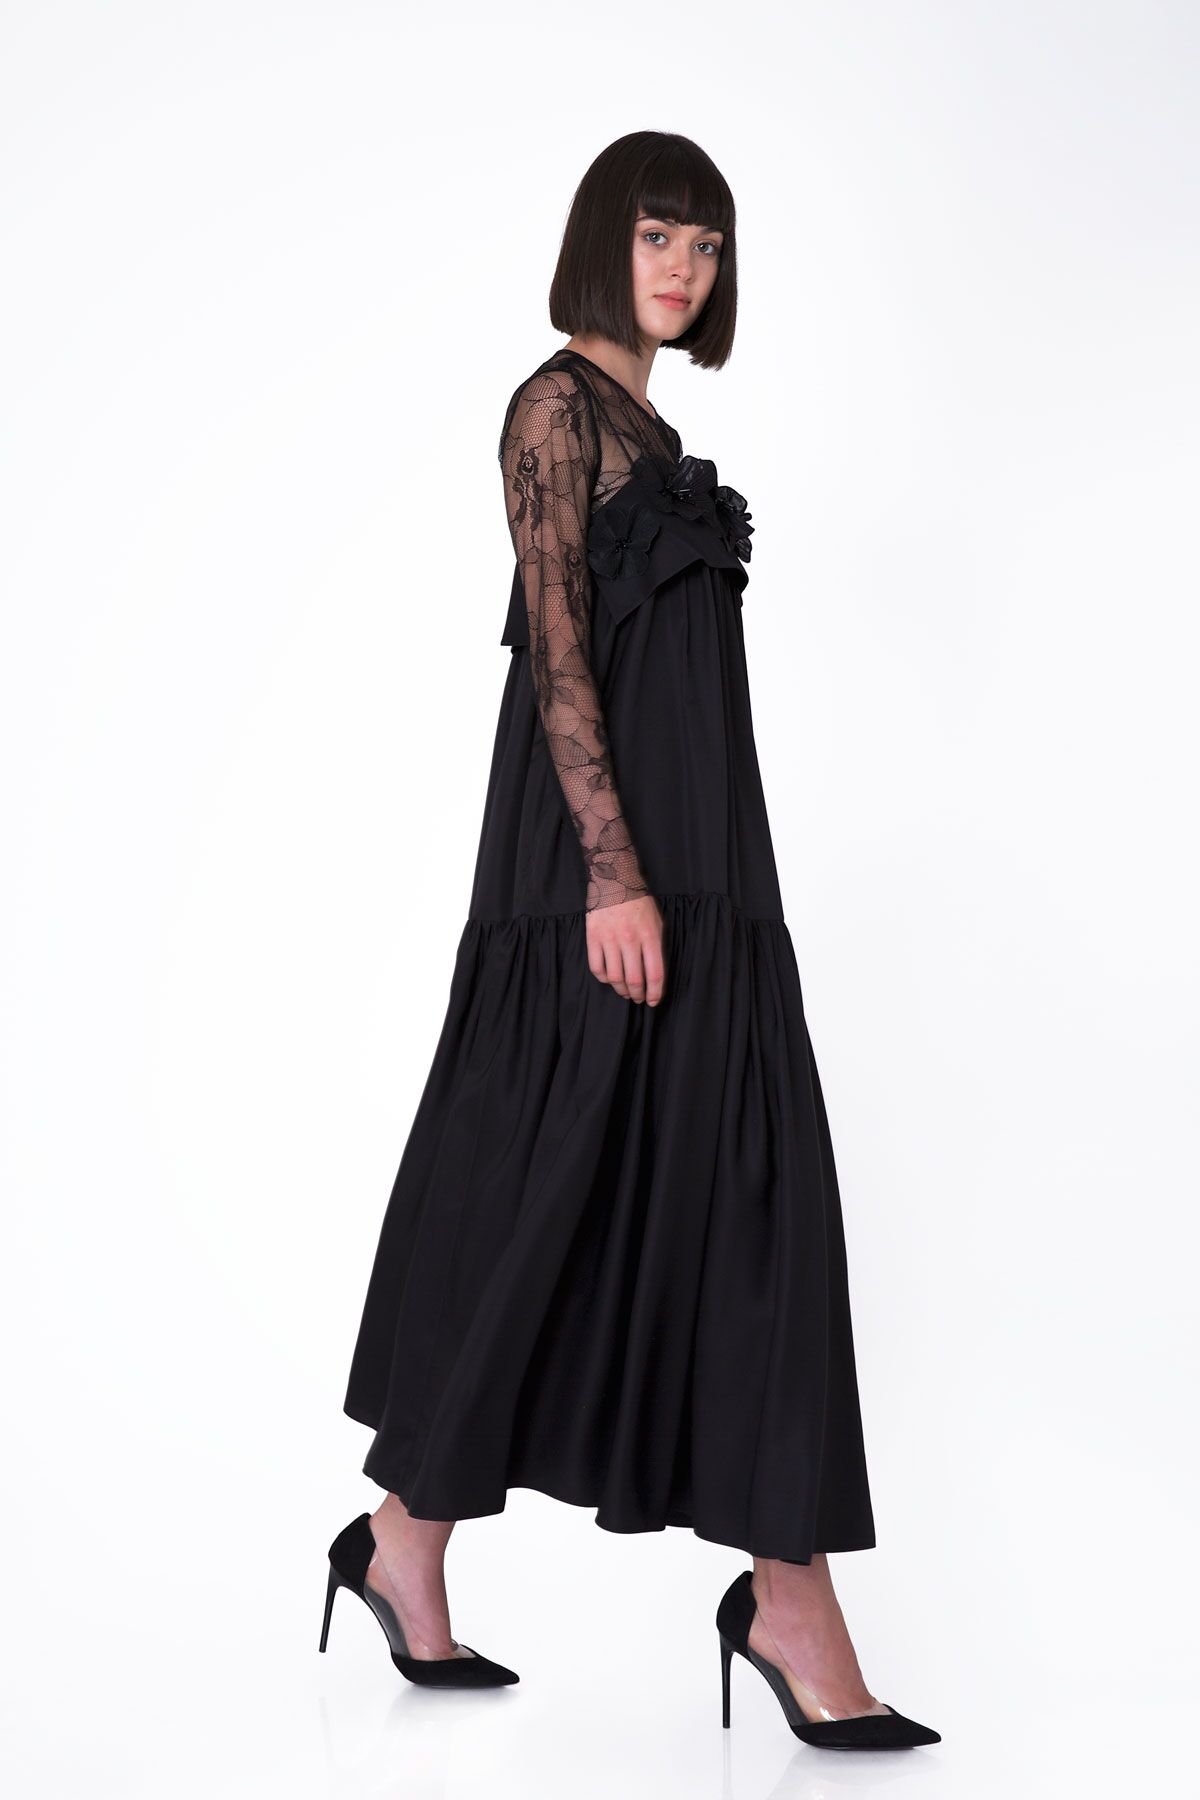 Lace Top Detailed Floral Appliqué Long Black Dress